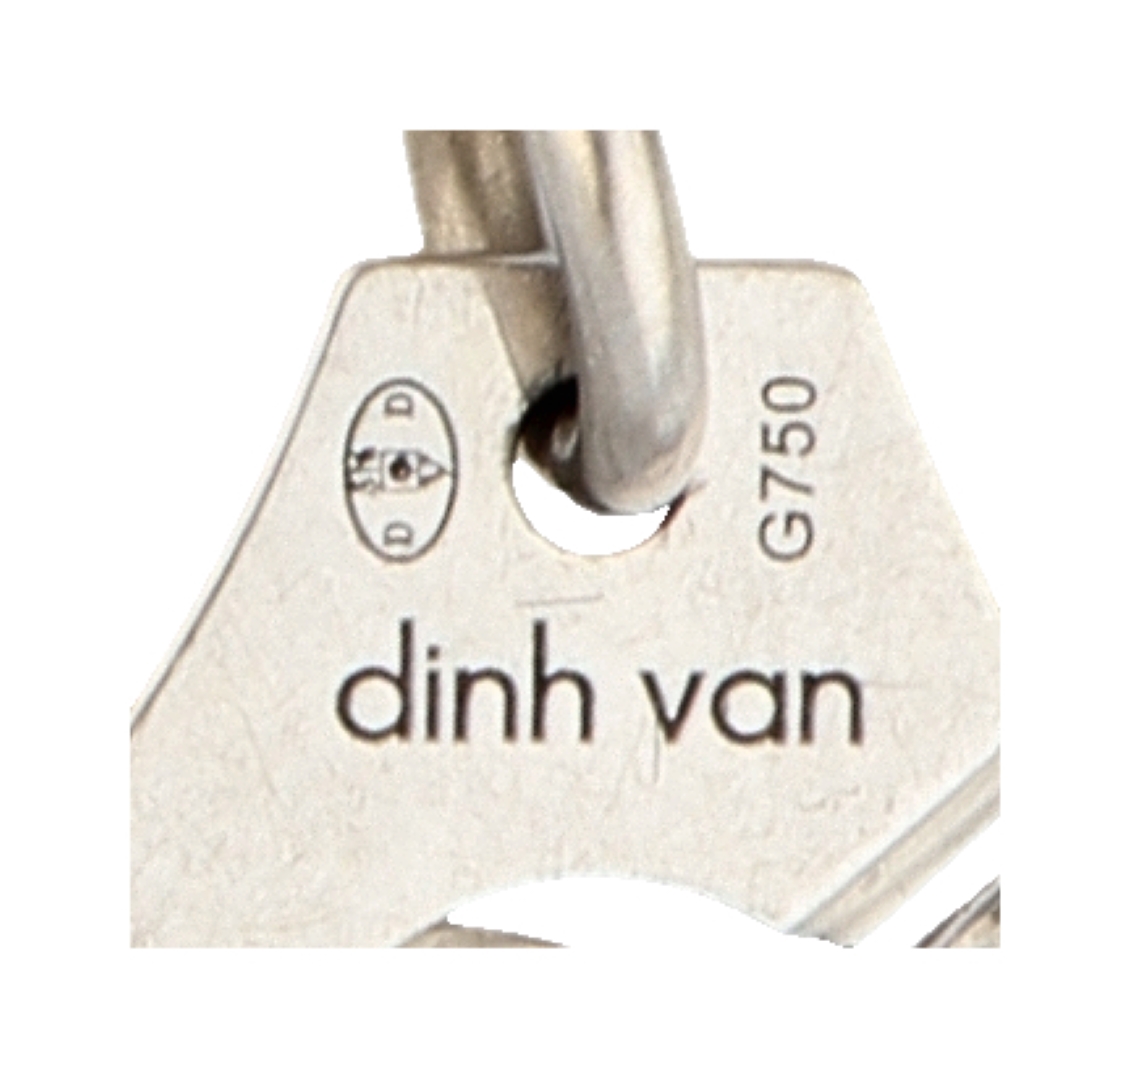 No Reserve - Dinh van 'menottes' 18K white gold R10 link bracelet. - Image 4 of 4